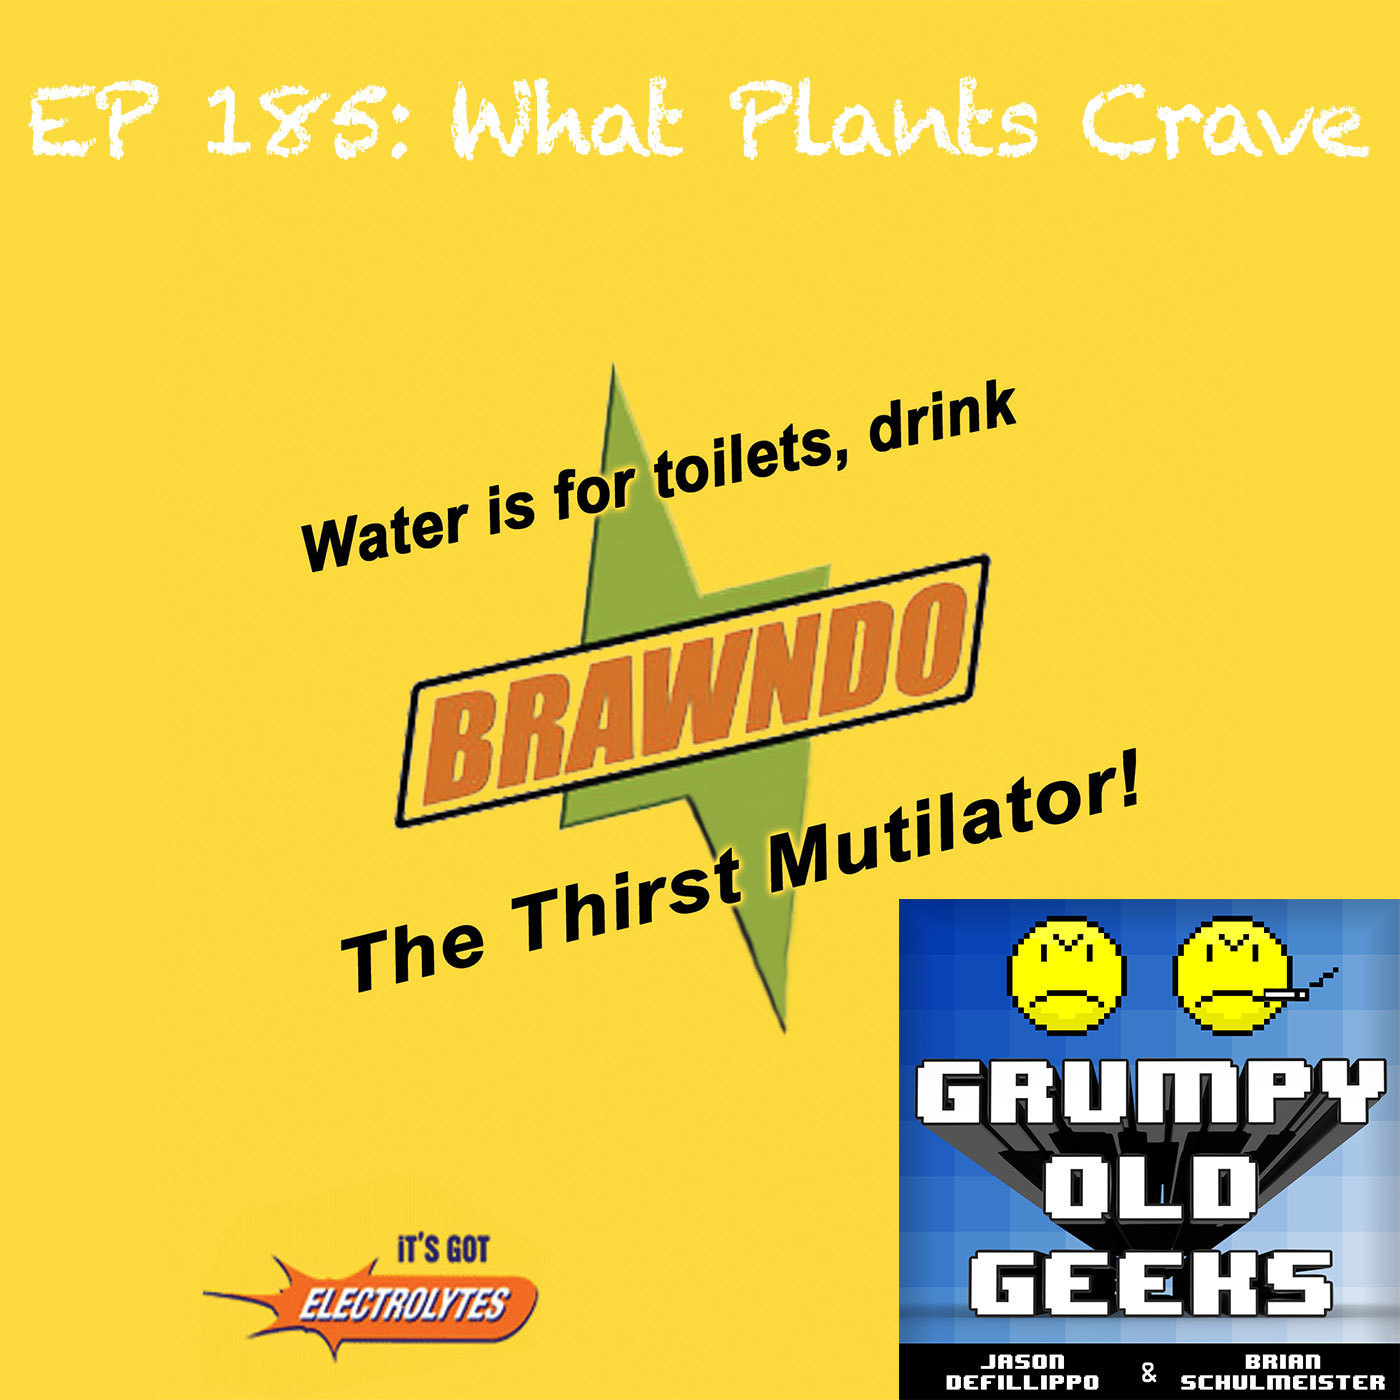 185: What Plants Crave